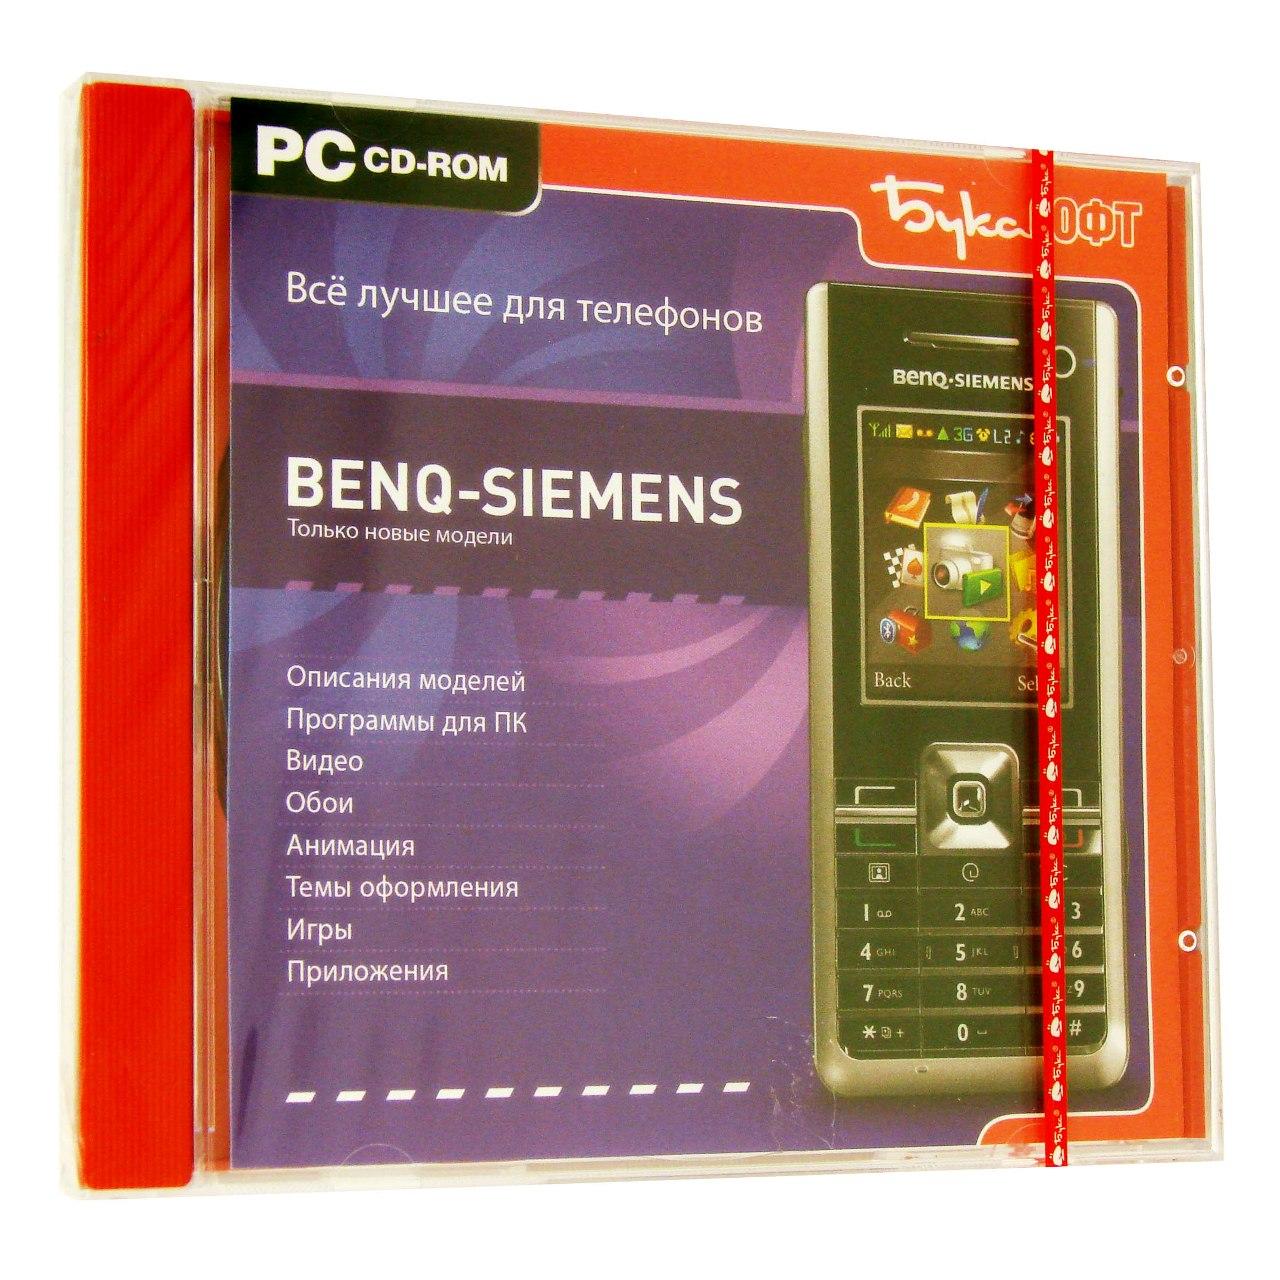 Компьютерный компакт-диск Все лучшее для телефонов Benq-Simens (PC), фирма "Бука", 1CD